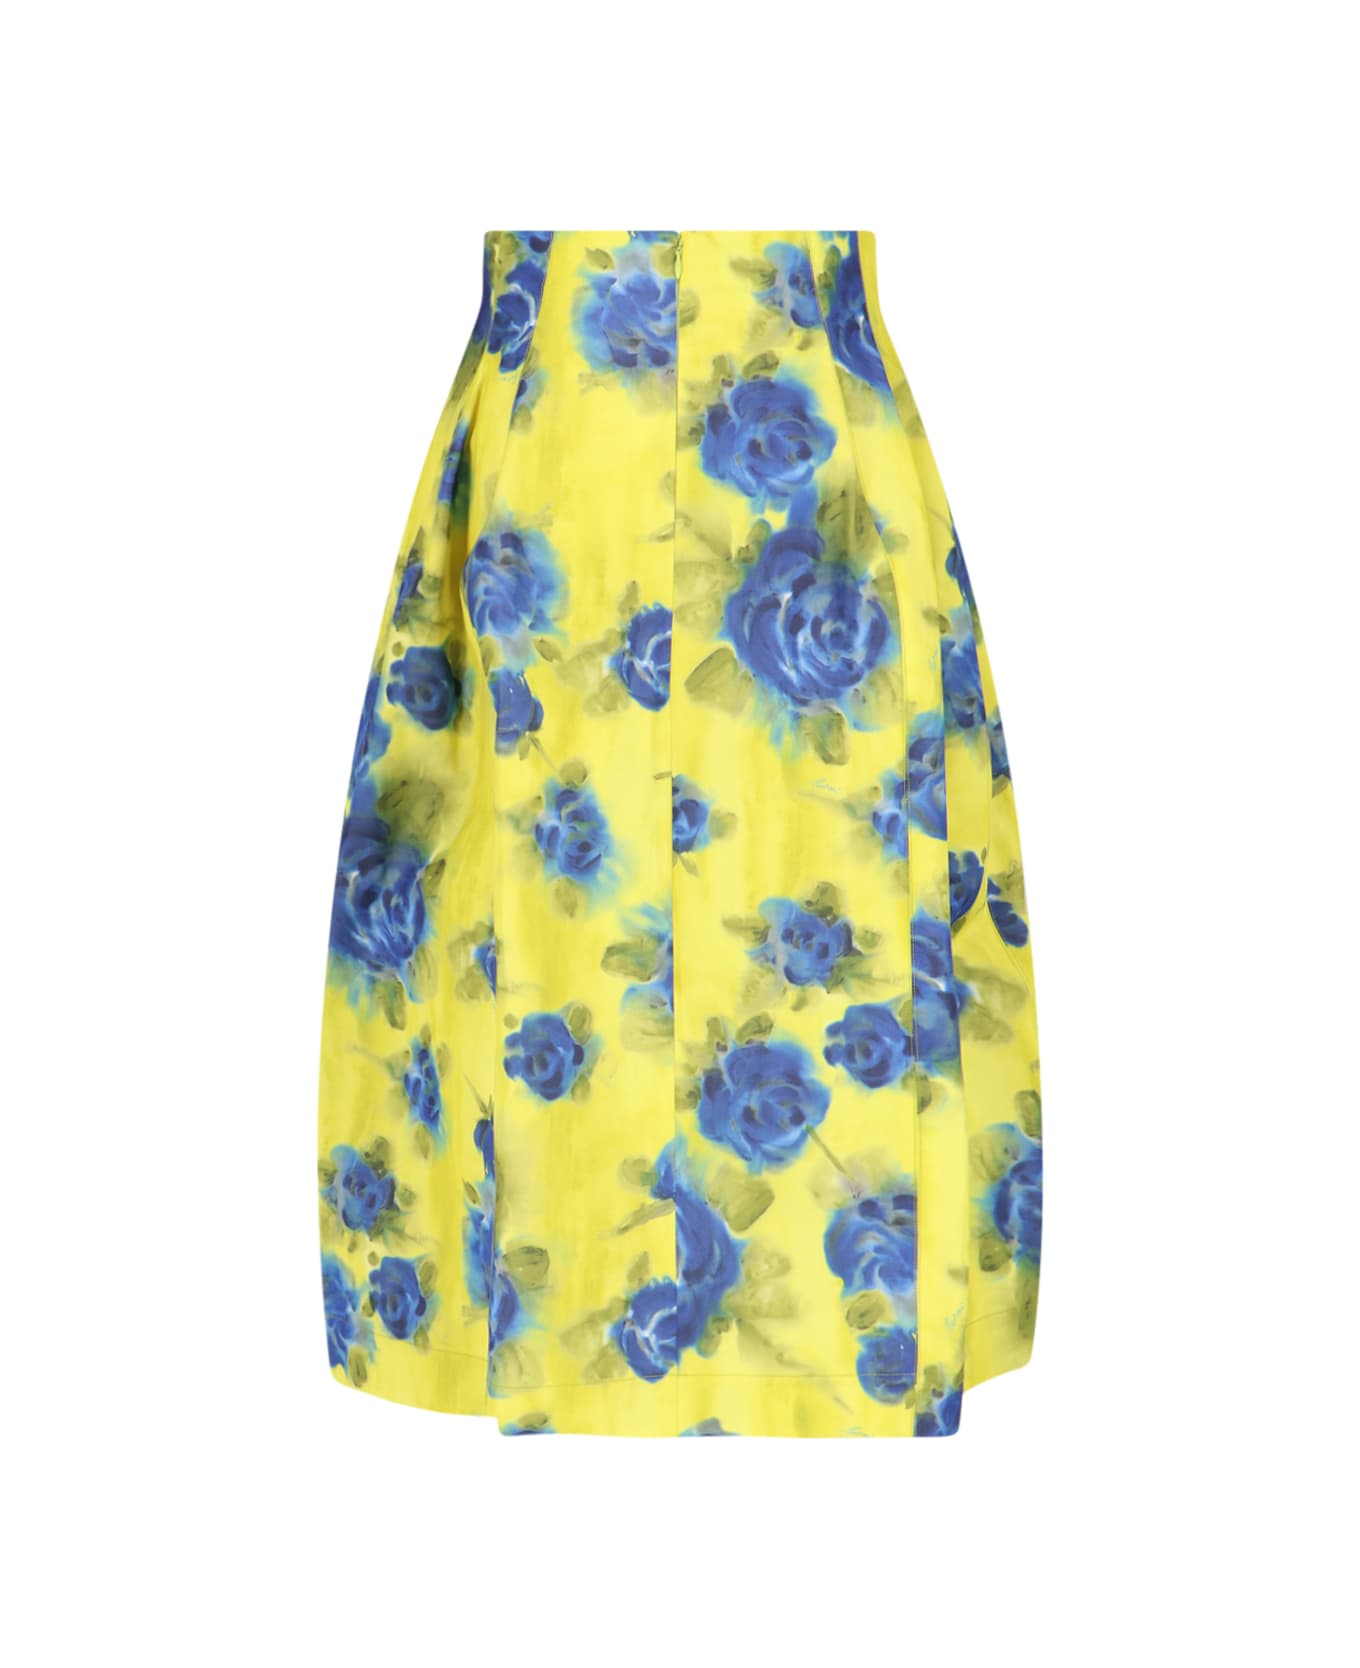 Marni 'idyll' Print Skirt - Yellow